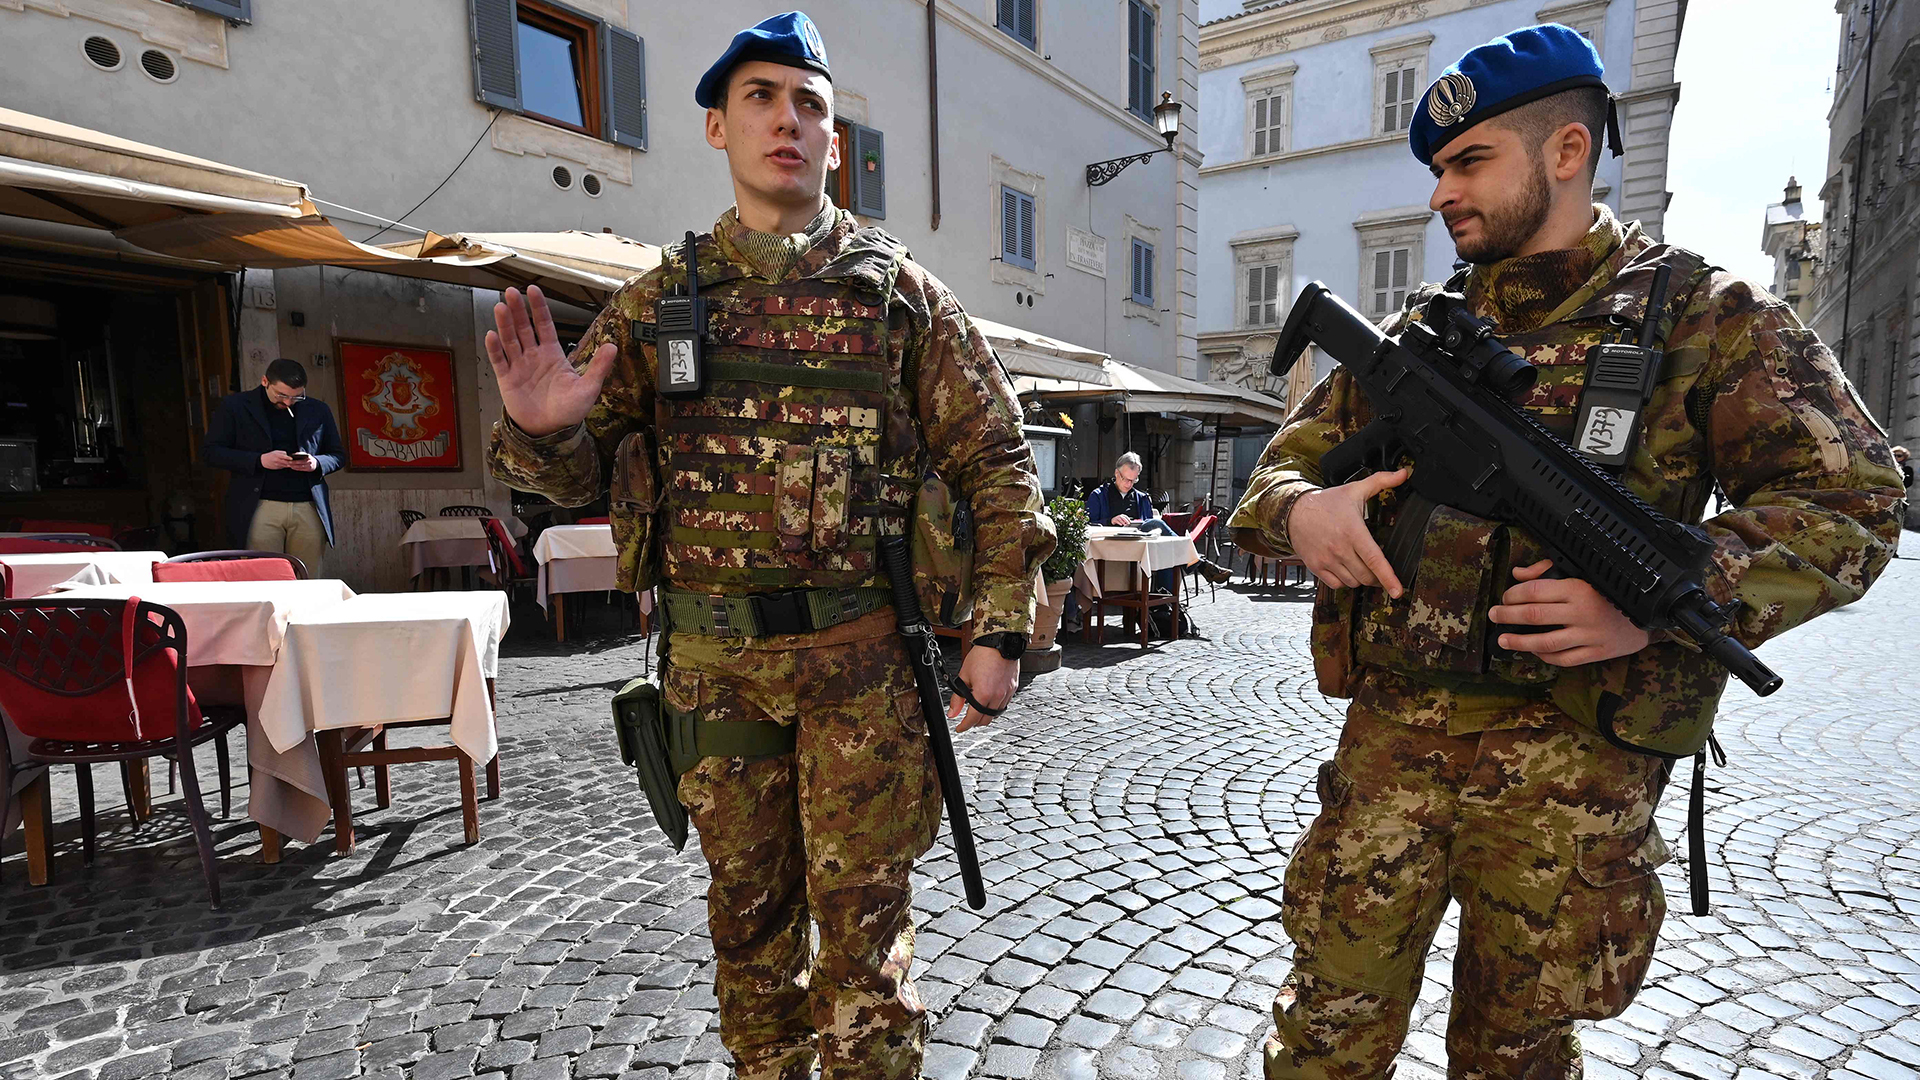 Soldaten patrouillieren in einer Straße in Rom